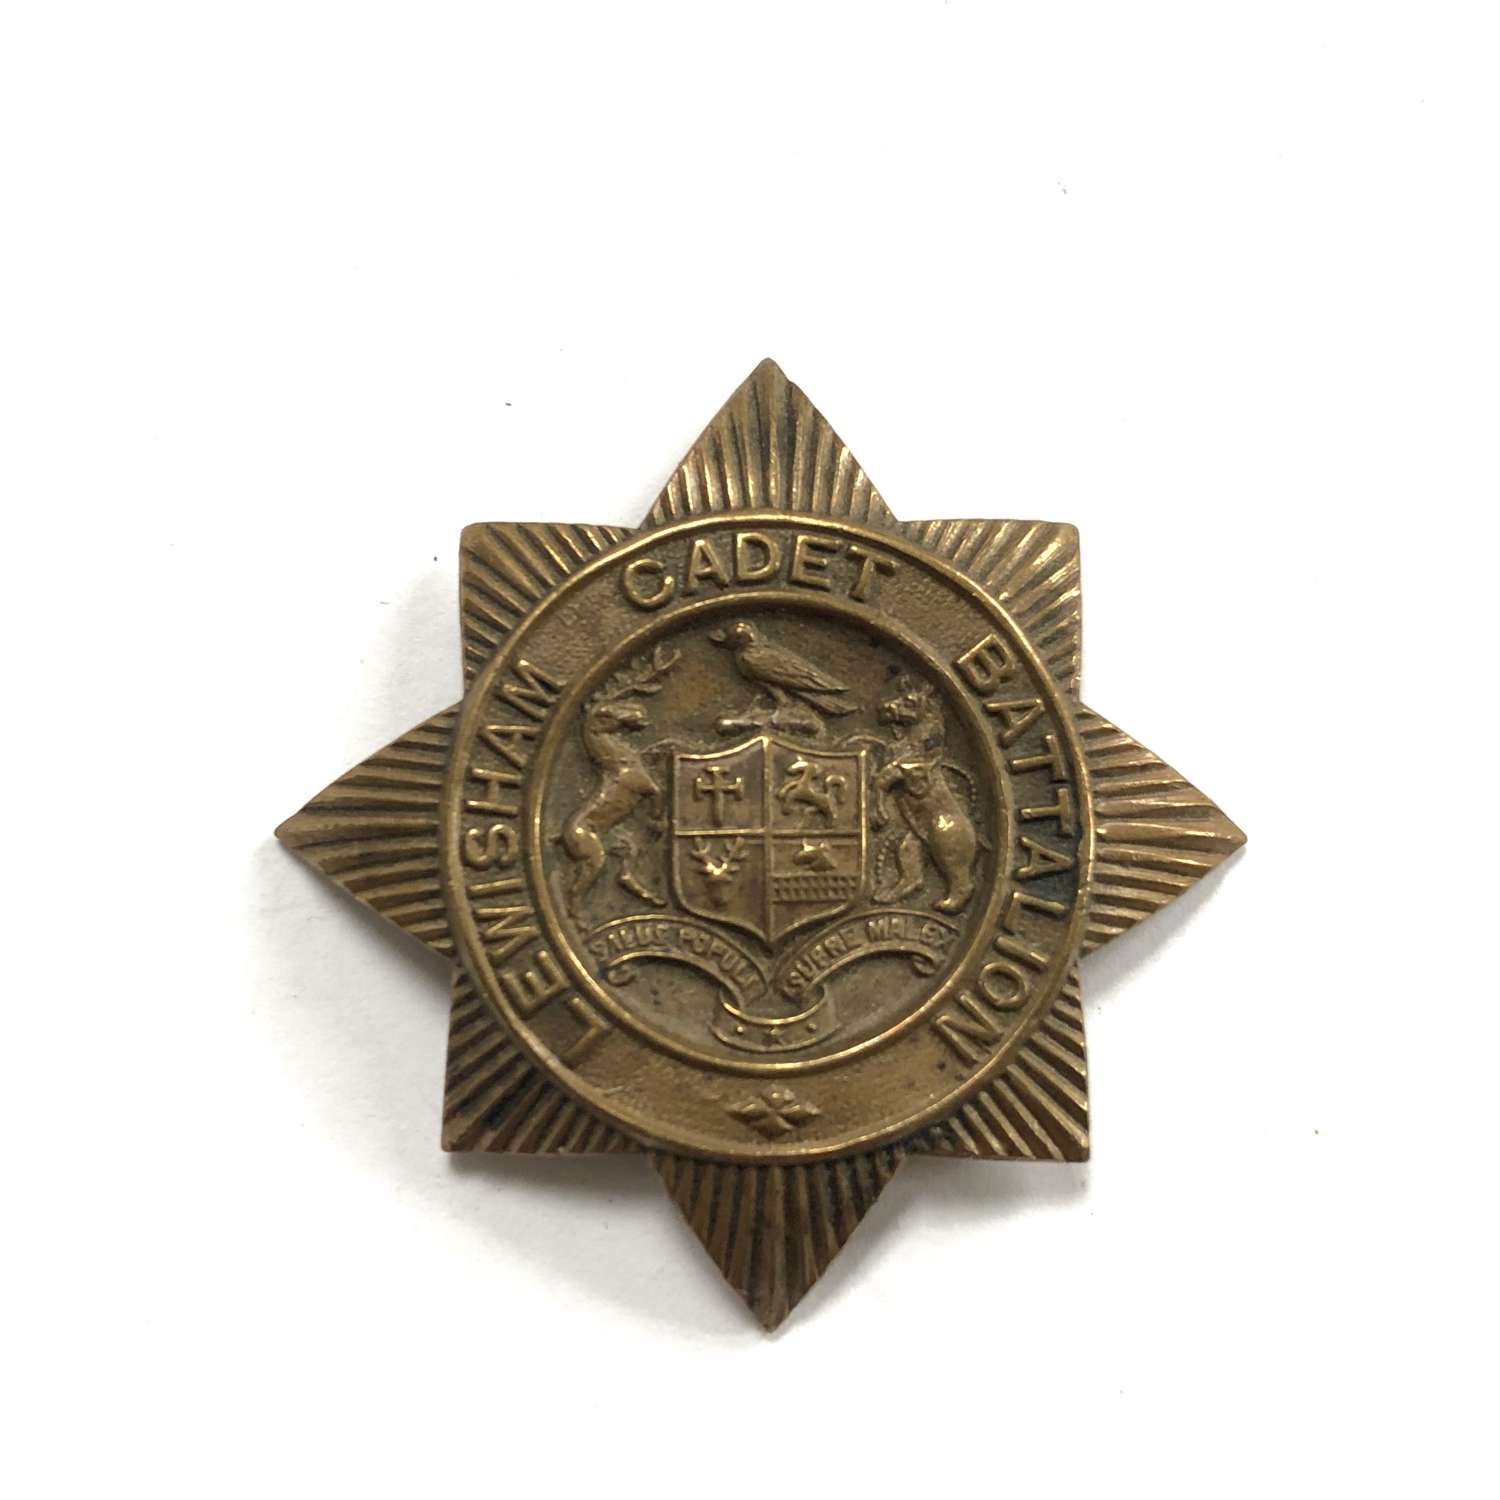 Lewisham Cadet Battalion cap badge